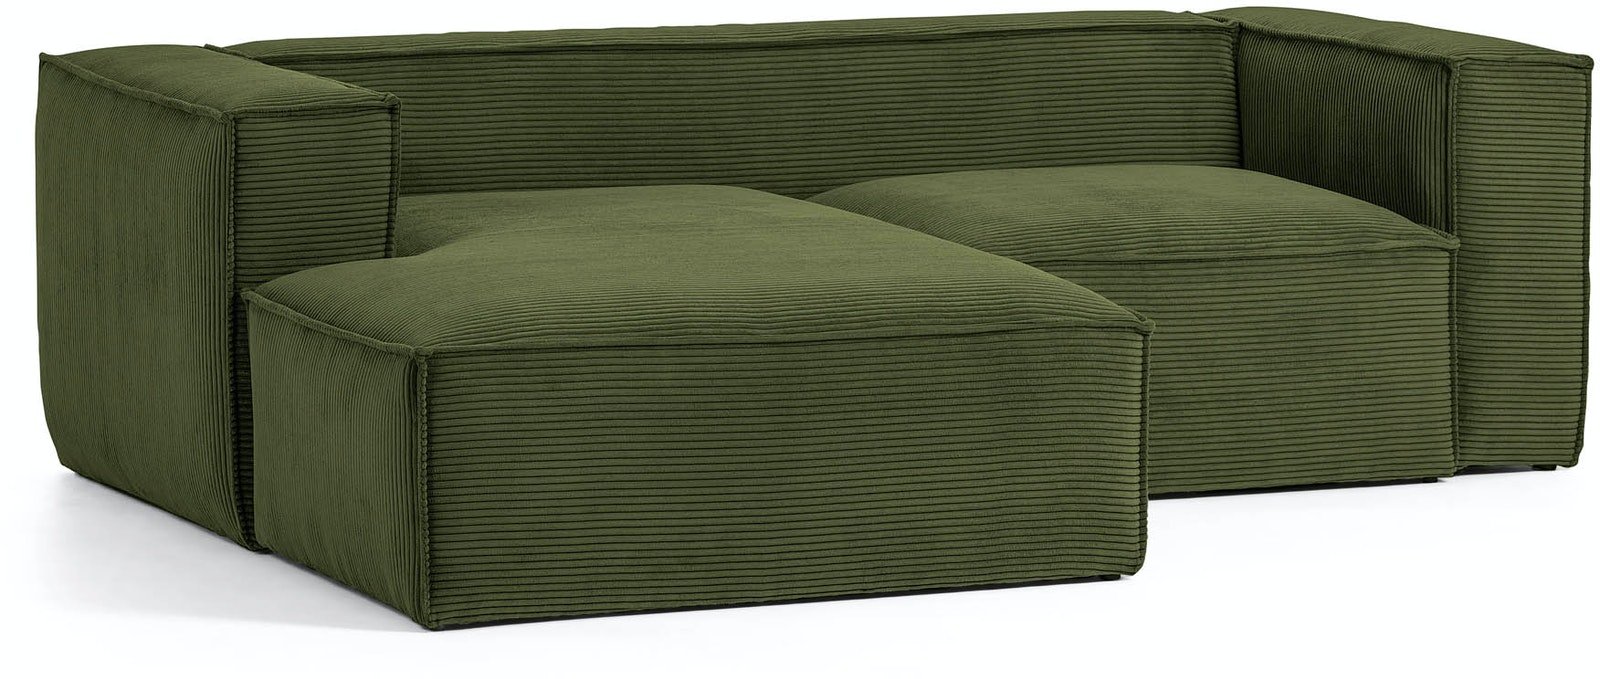 Blok, Sofa med chaiselong, Venstrevendt, Fløjl by Kave Home (H: 69 cm. B: 240 cm. L: 174 cm., Grøn)